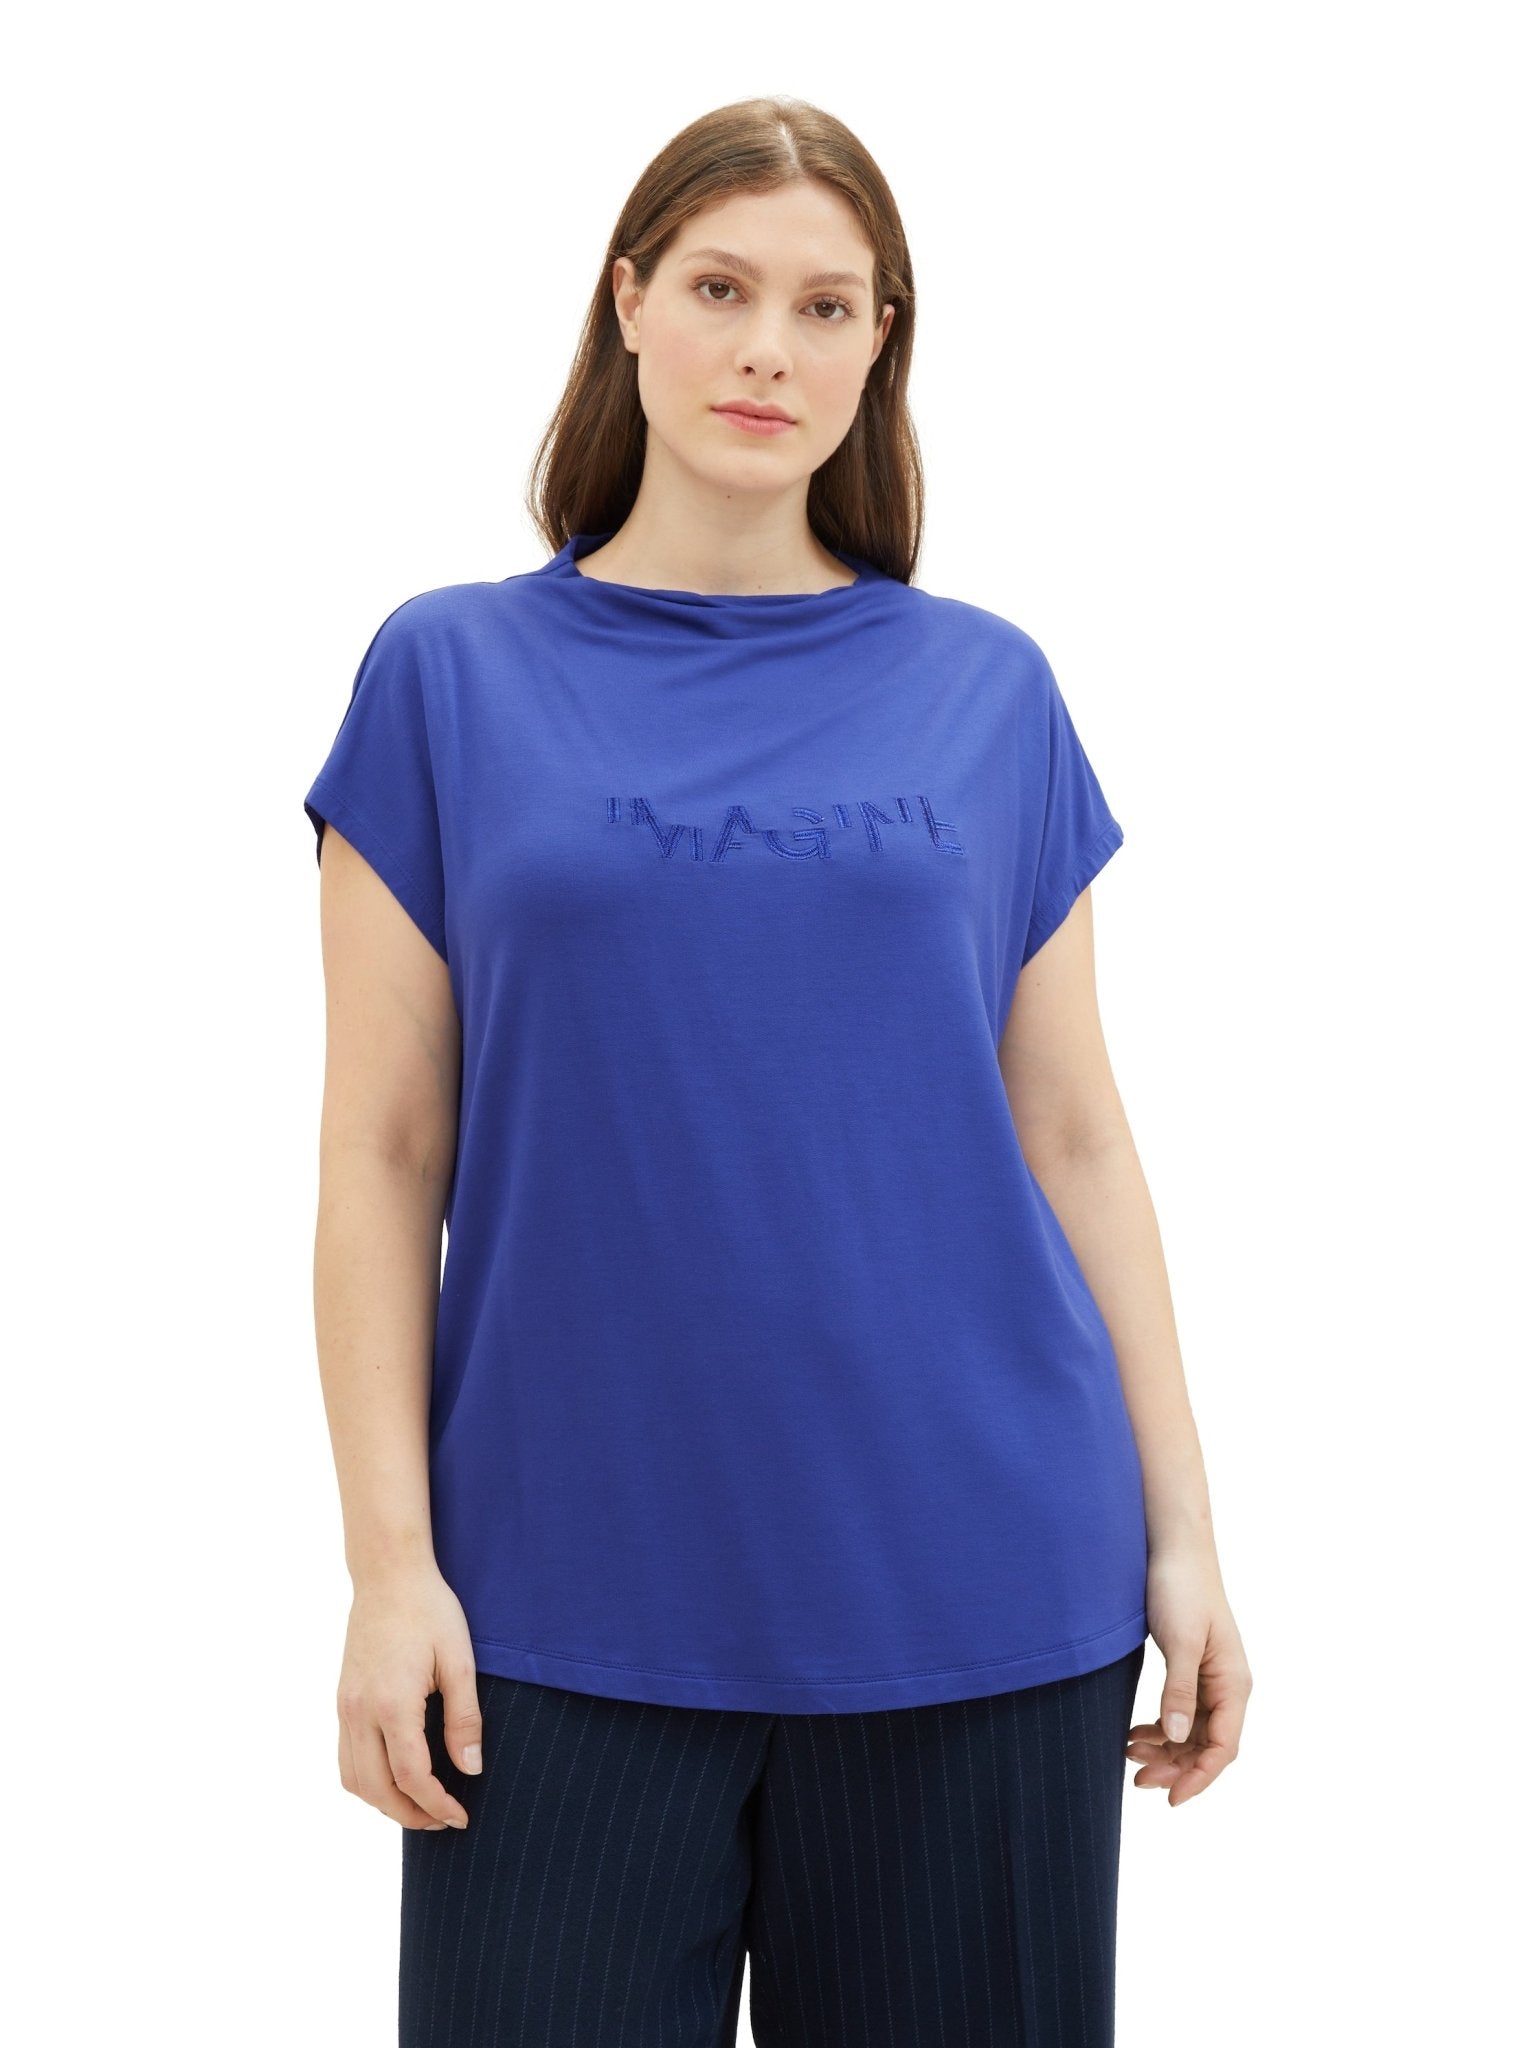 1040059T-Shirt mit Stehkragen Imagine blau - Wildflowers44Blau